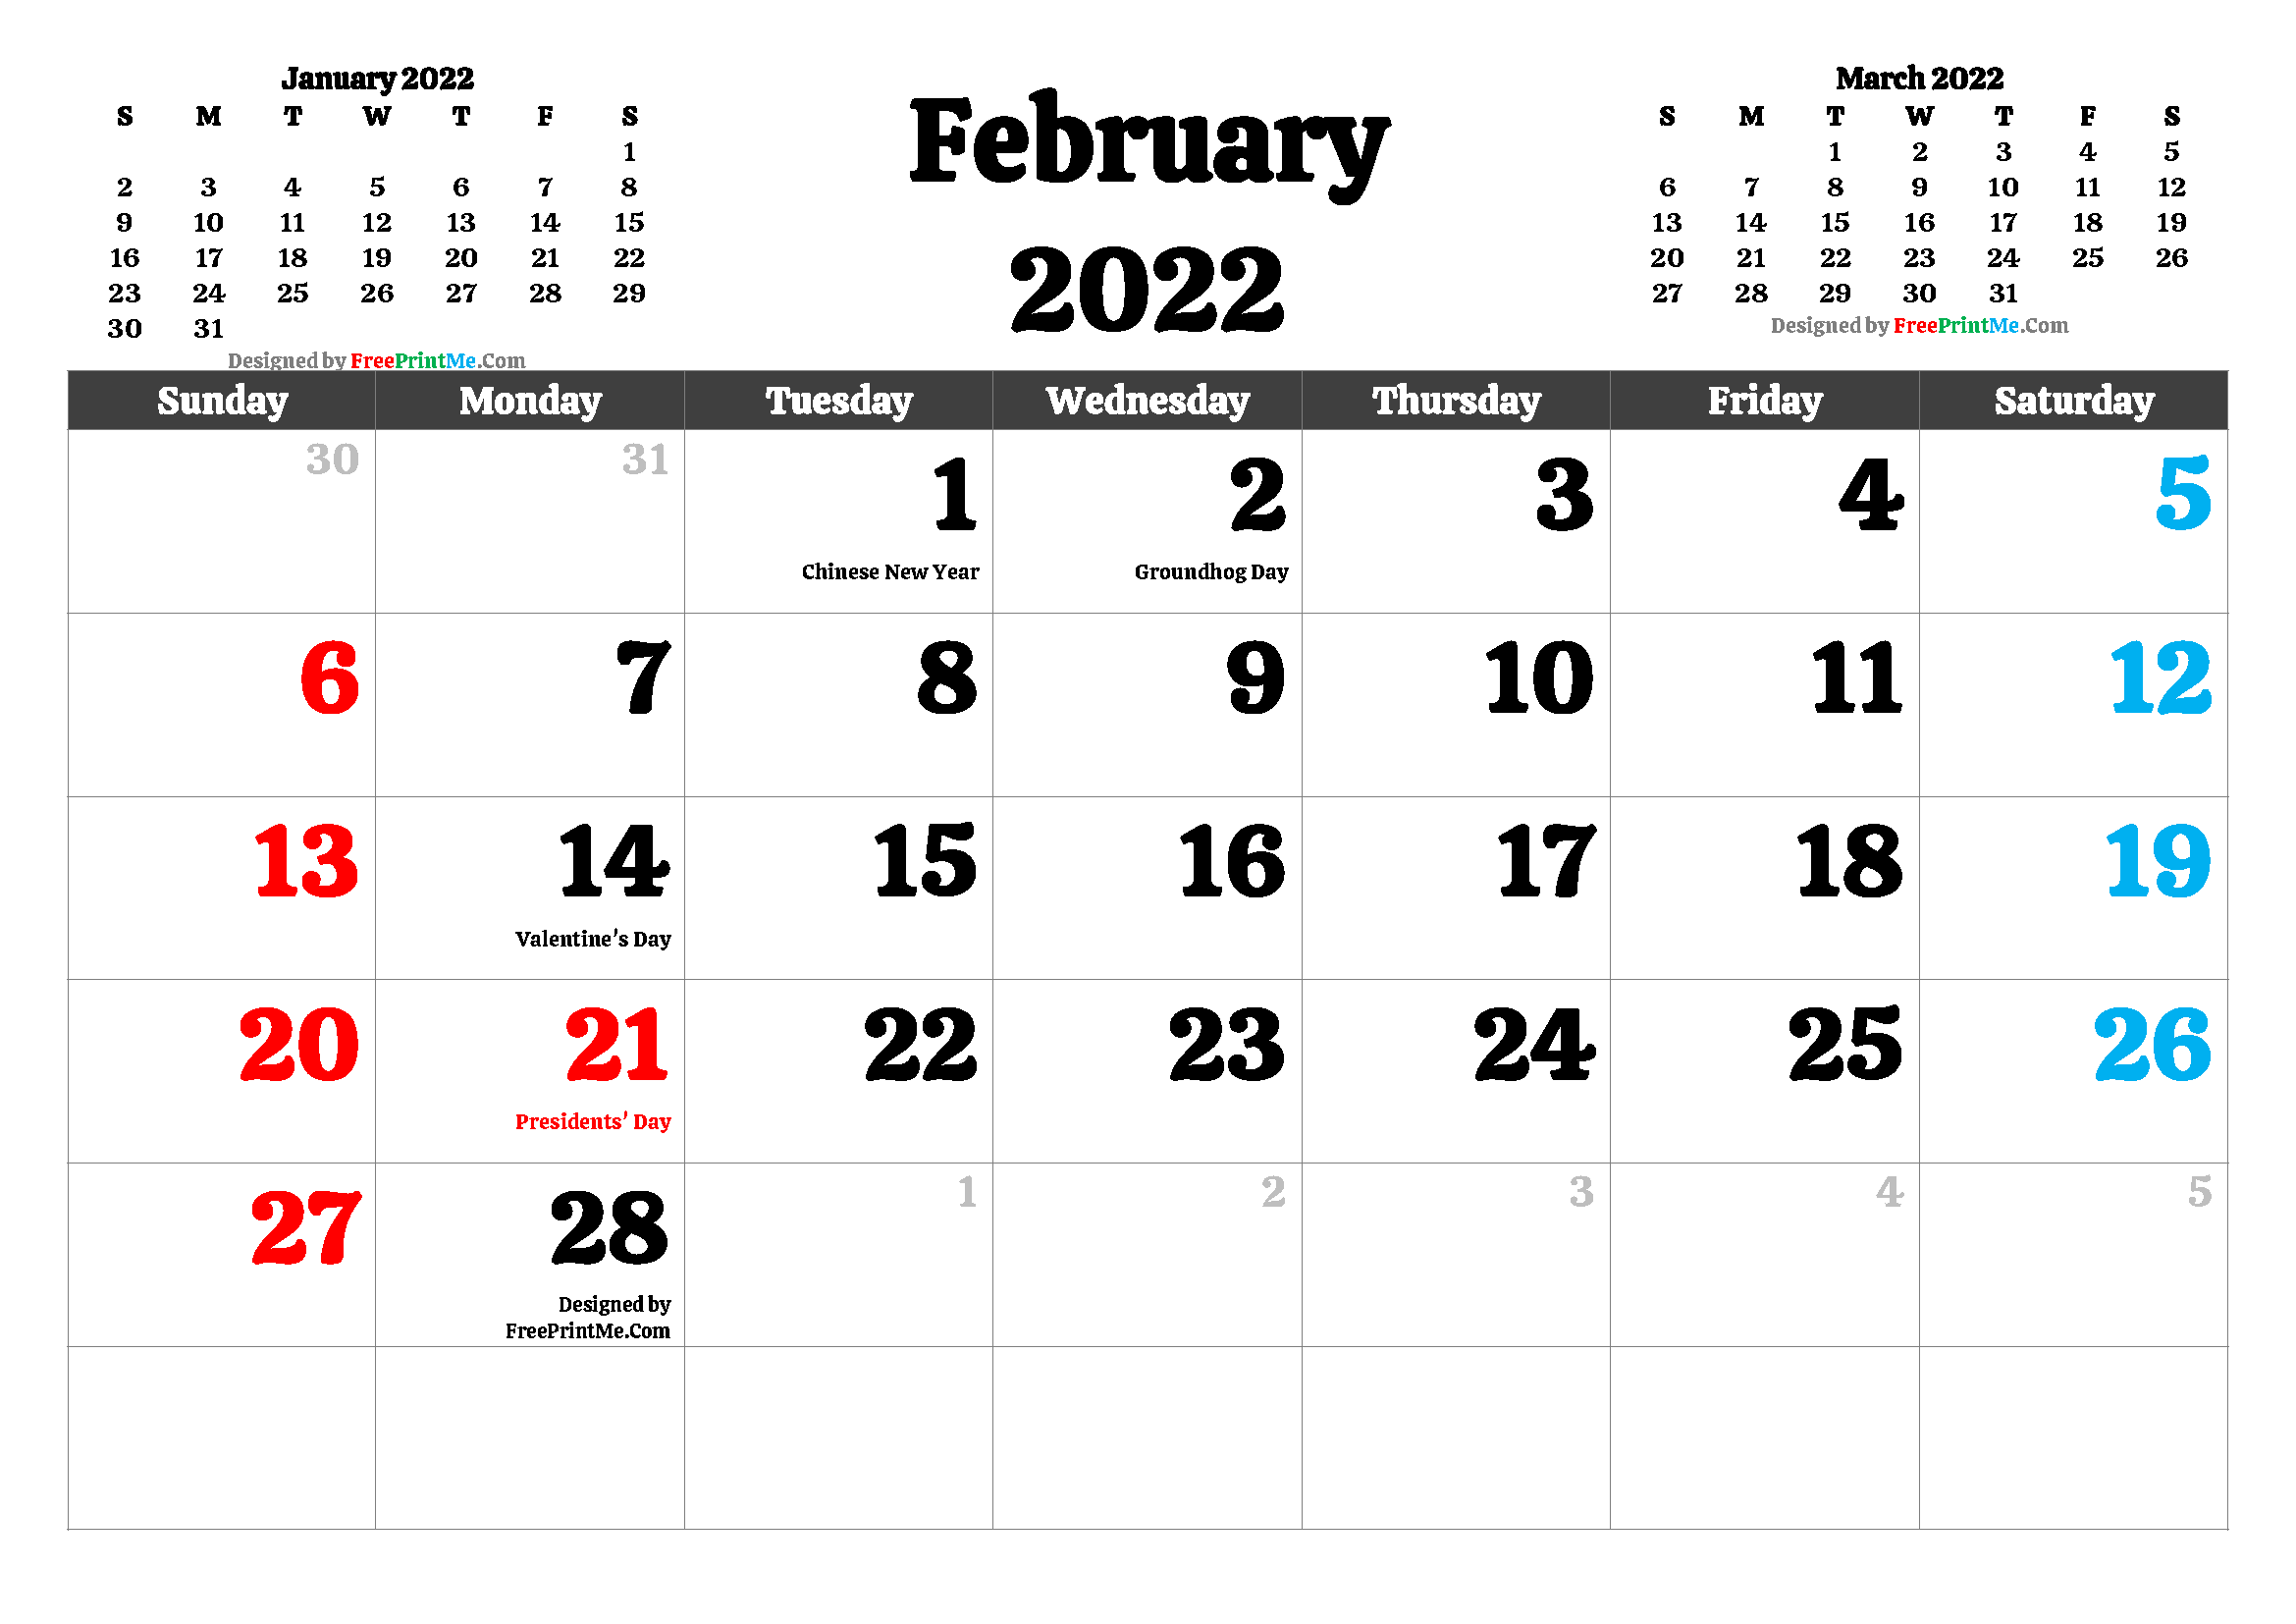 Feb 2022 Calendar Free Printable February 2022 Calendar Pdf And Image